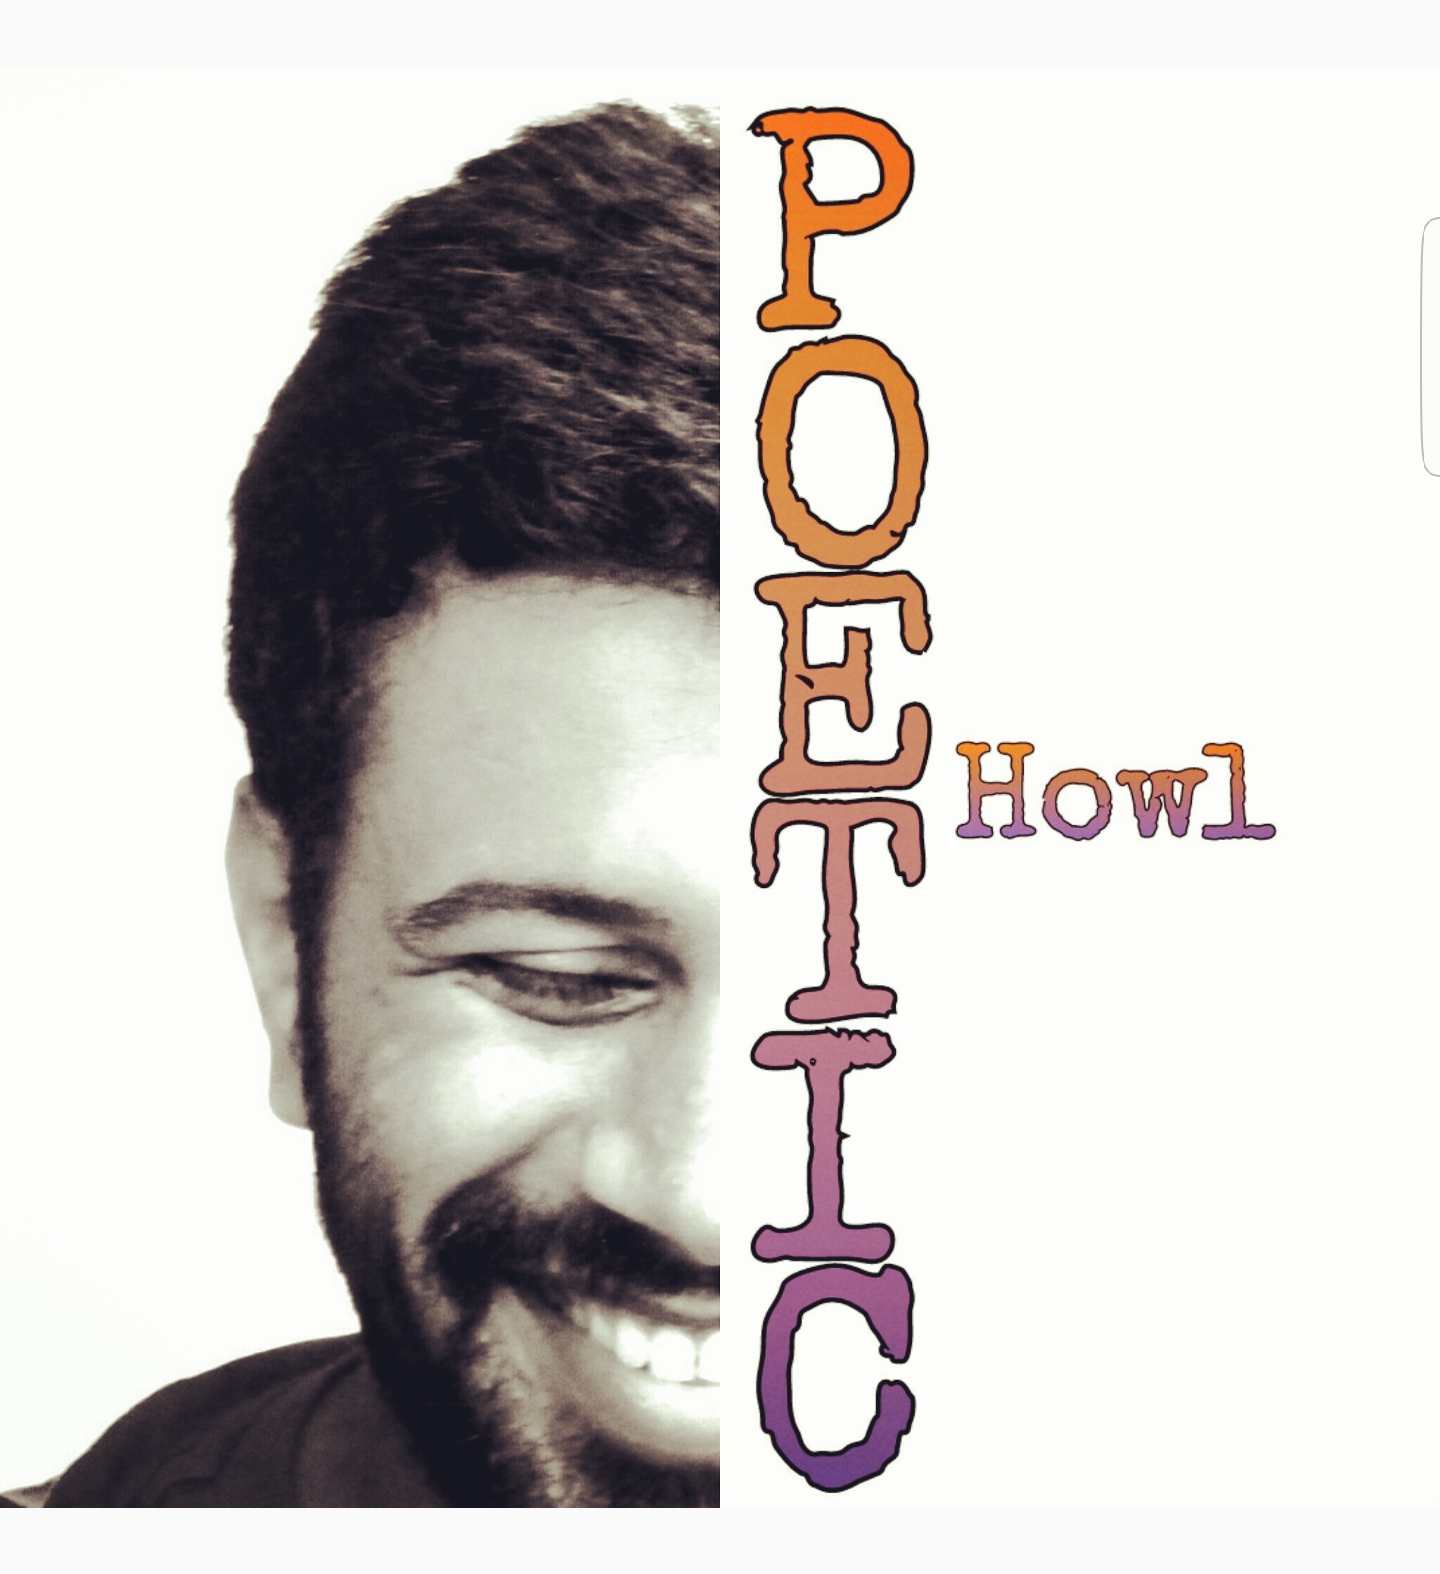 poetic howl